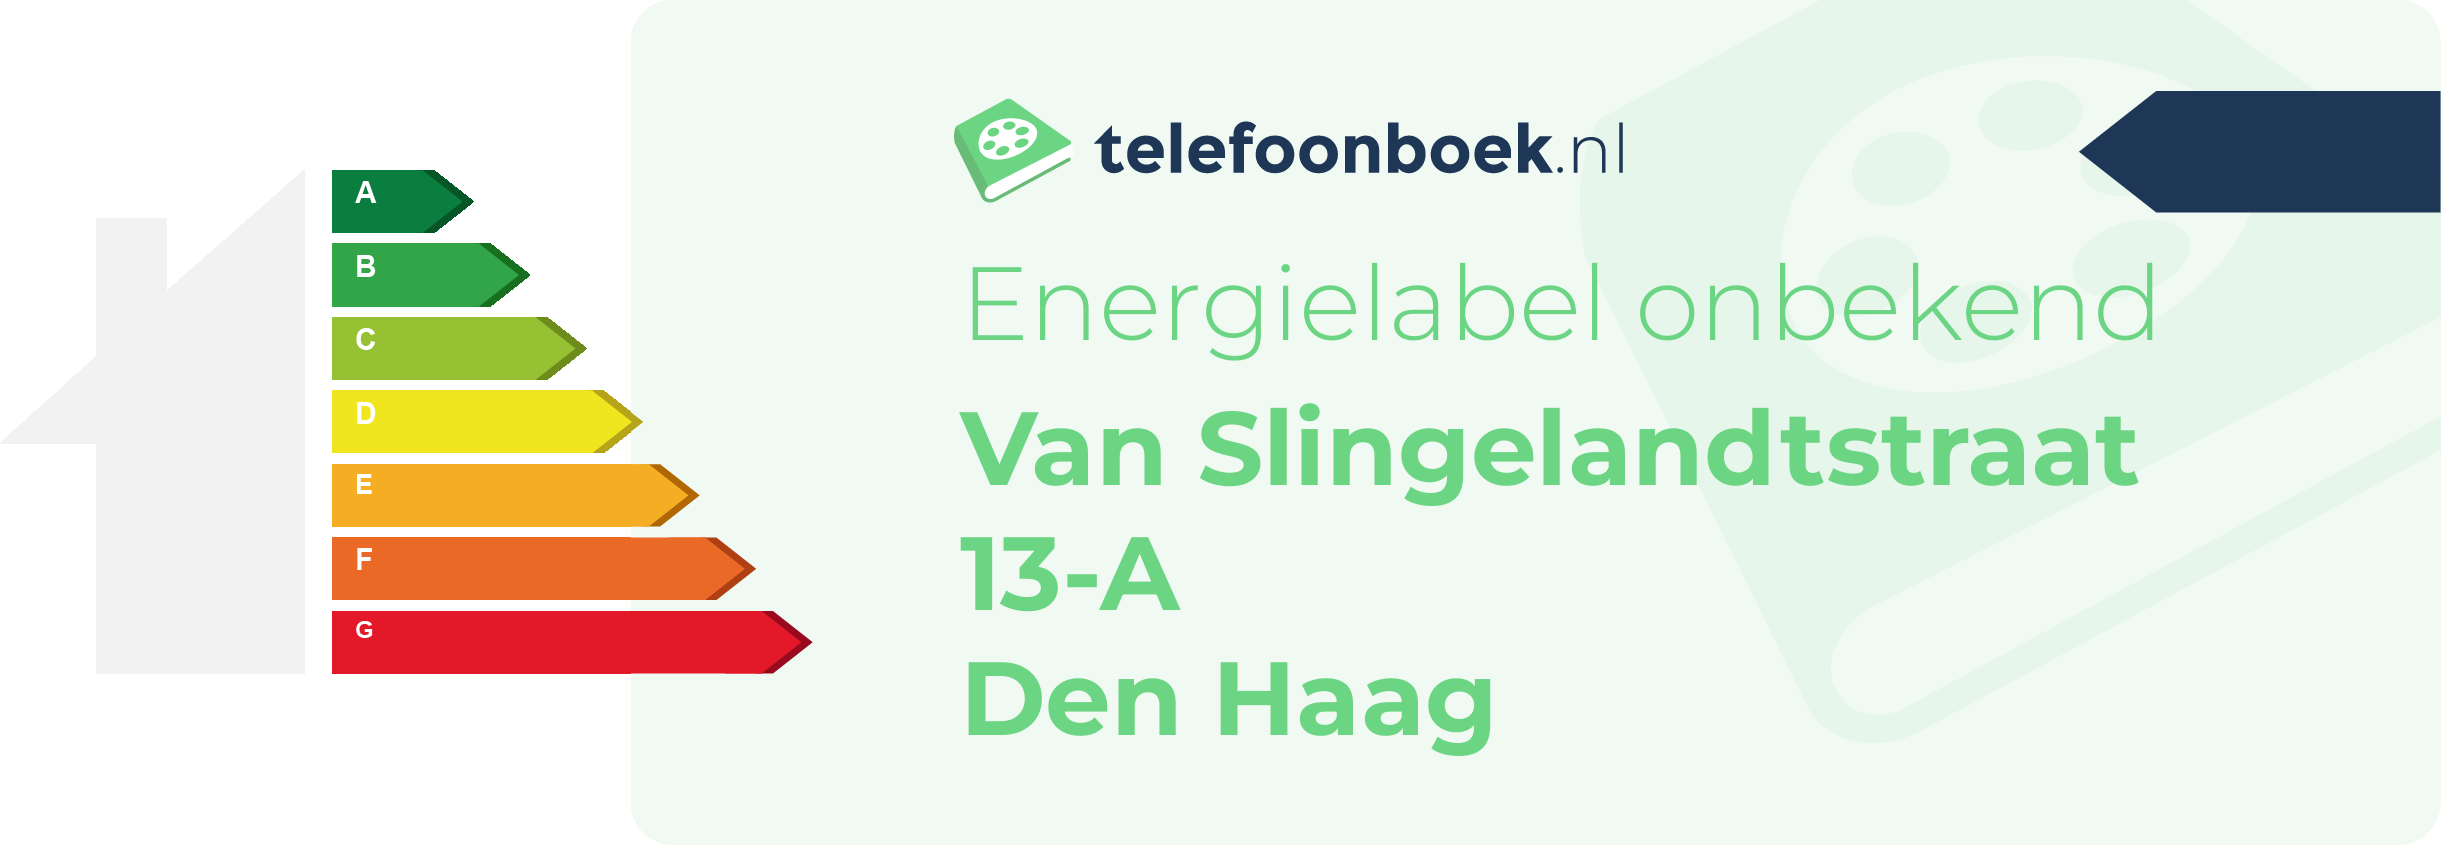 Energielabel Van Slingelandtstraat 13-A Den Haag